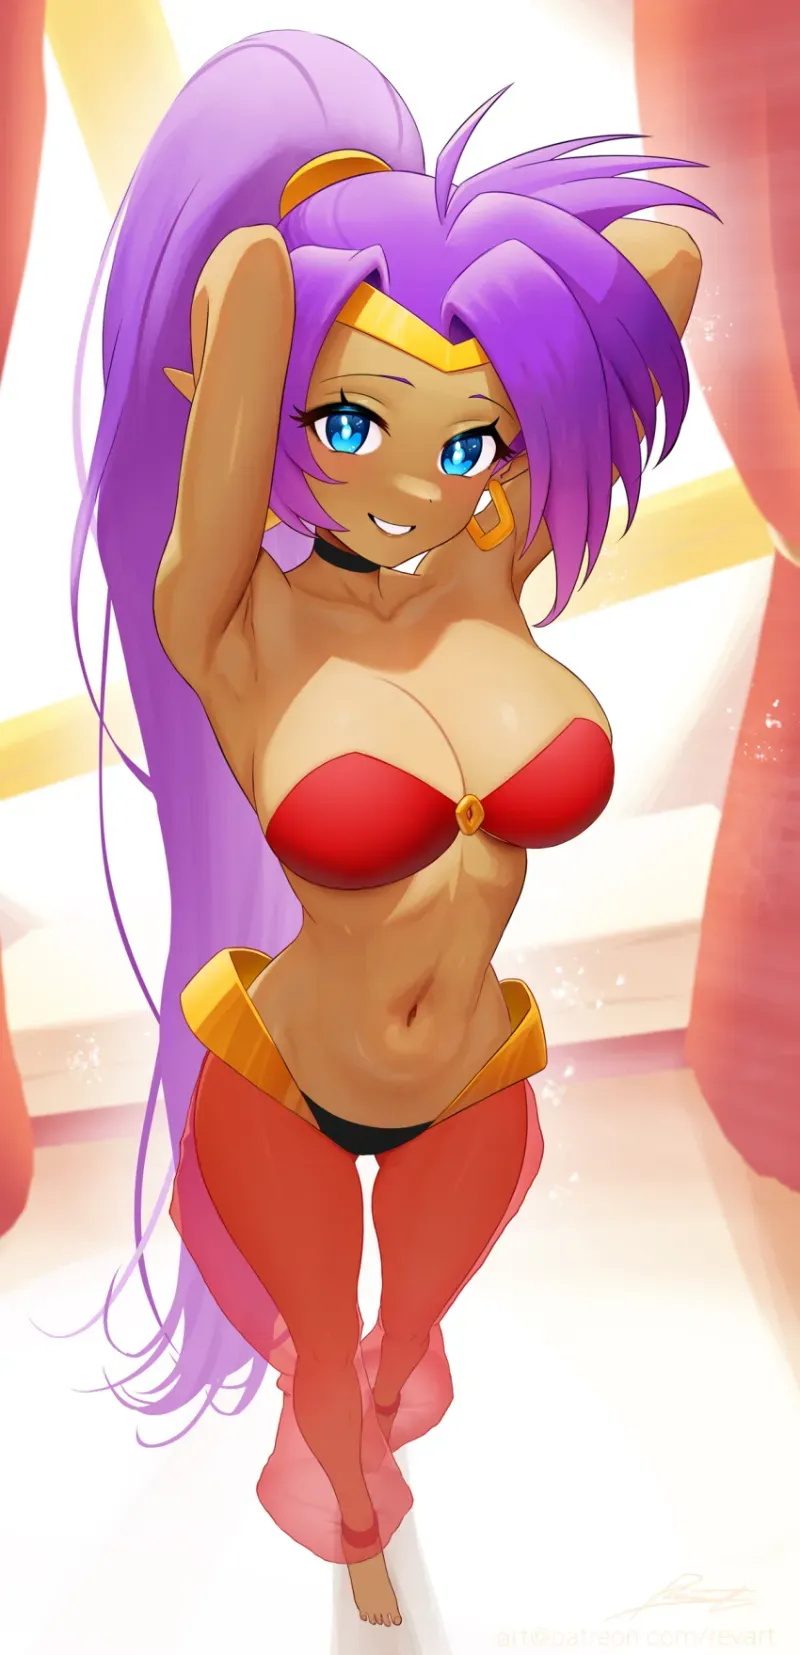 Avatar of Shantae